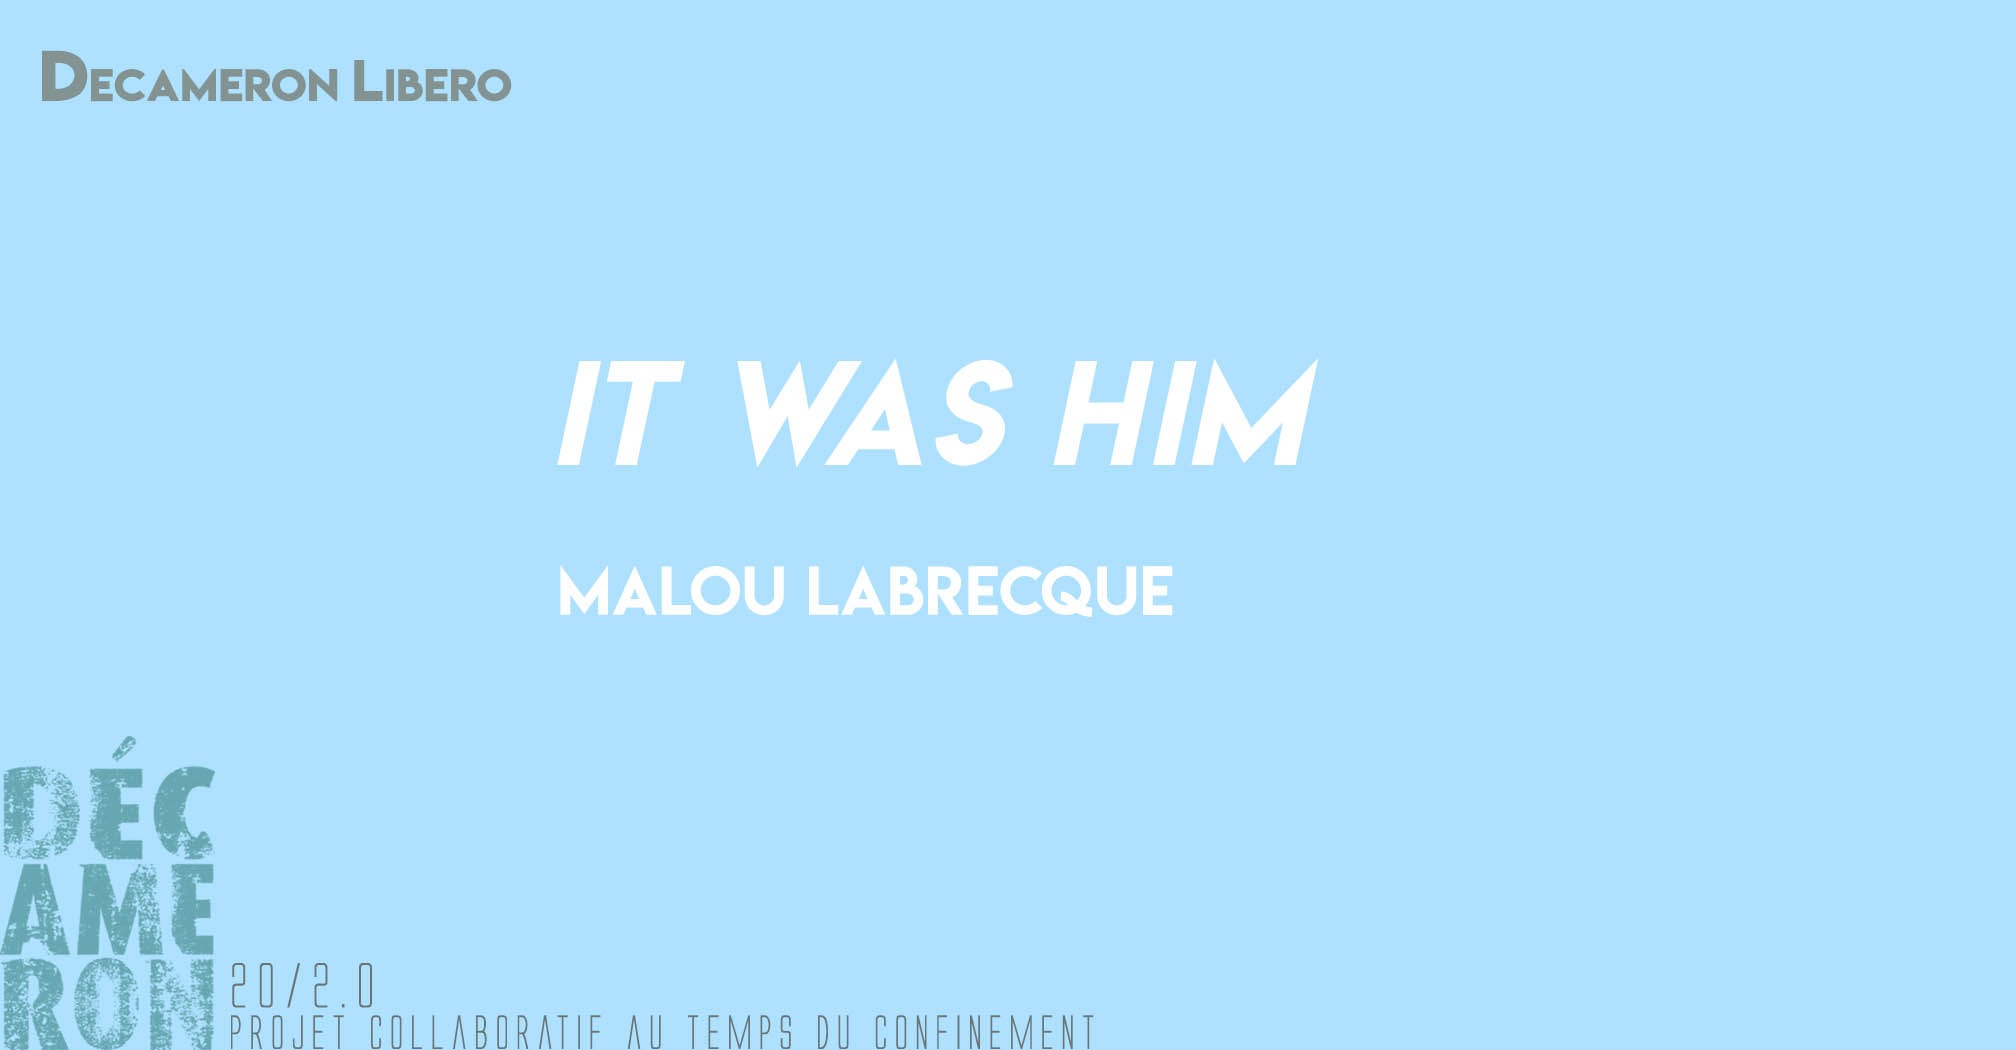 It was him - Malou Labrecque